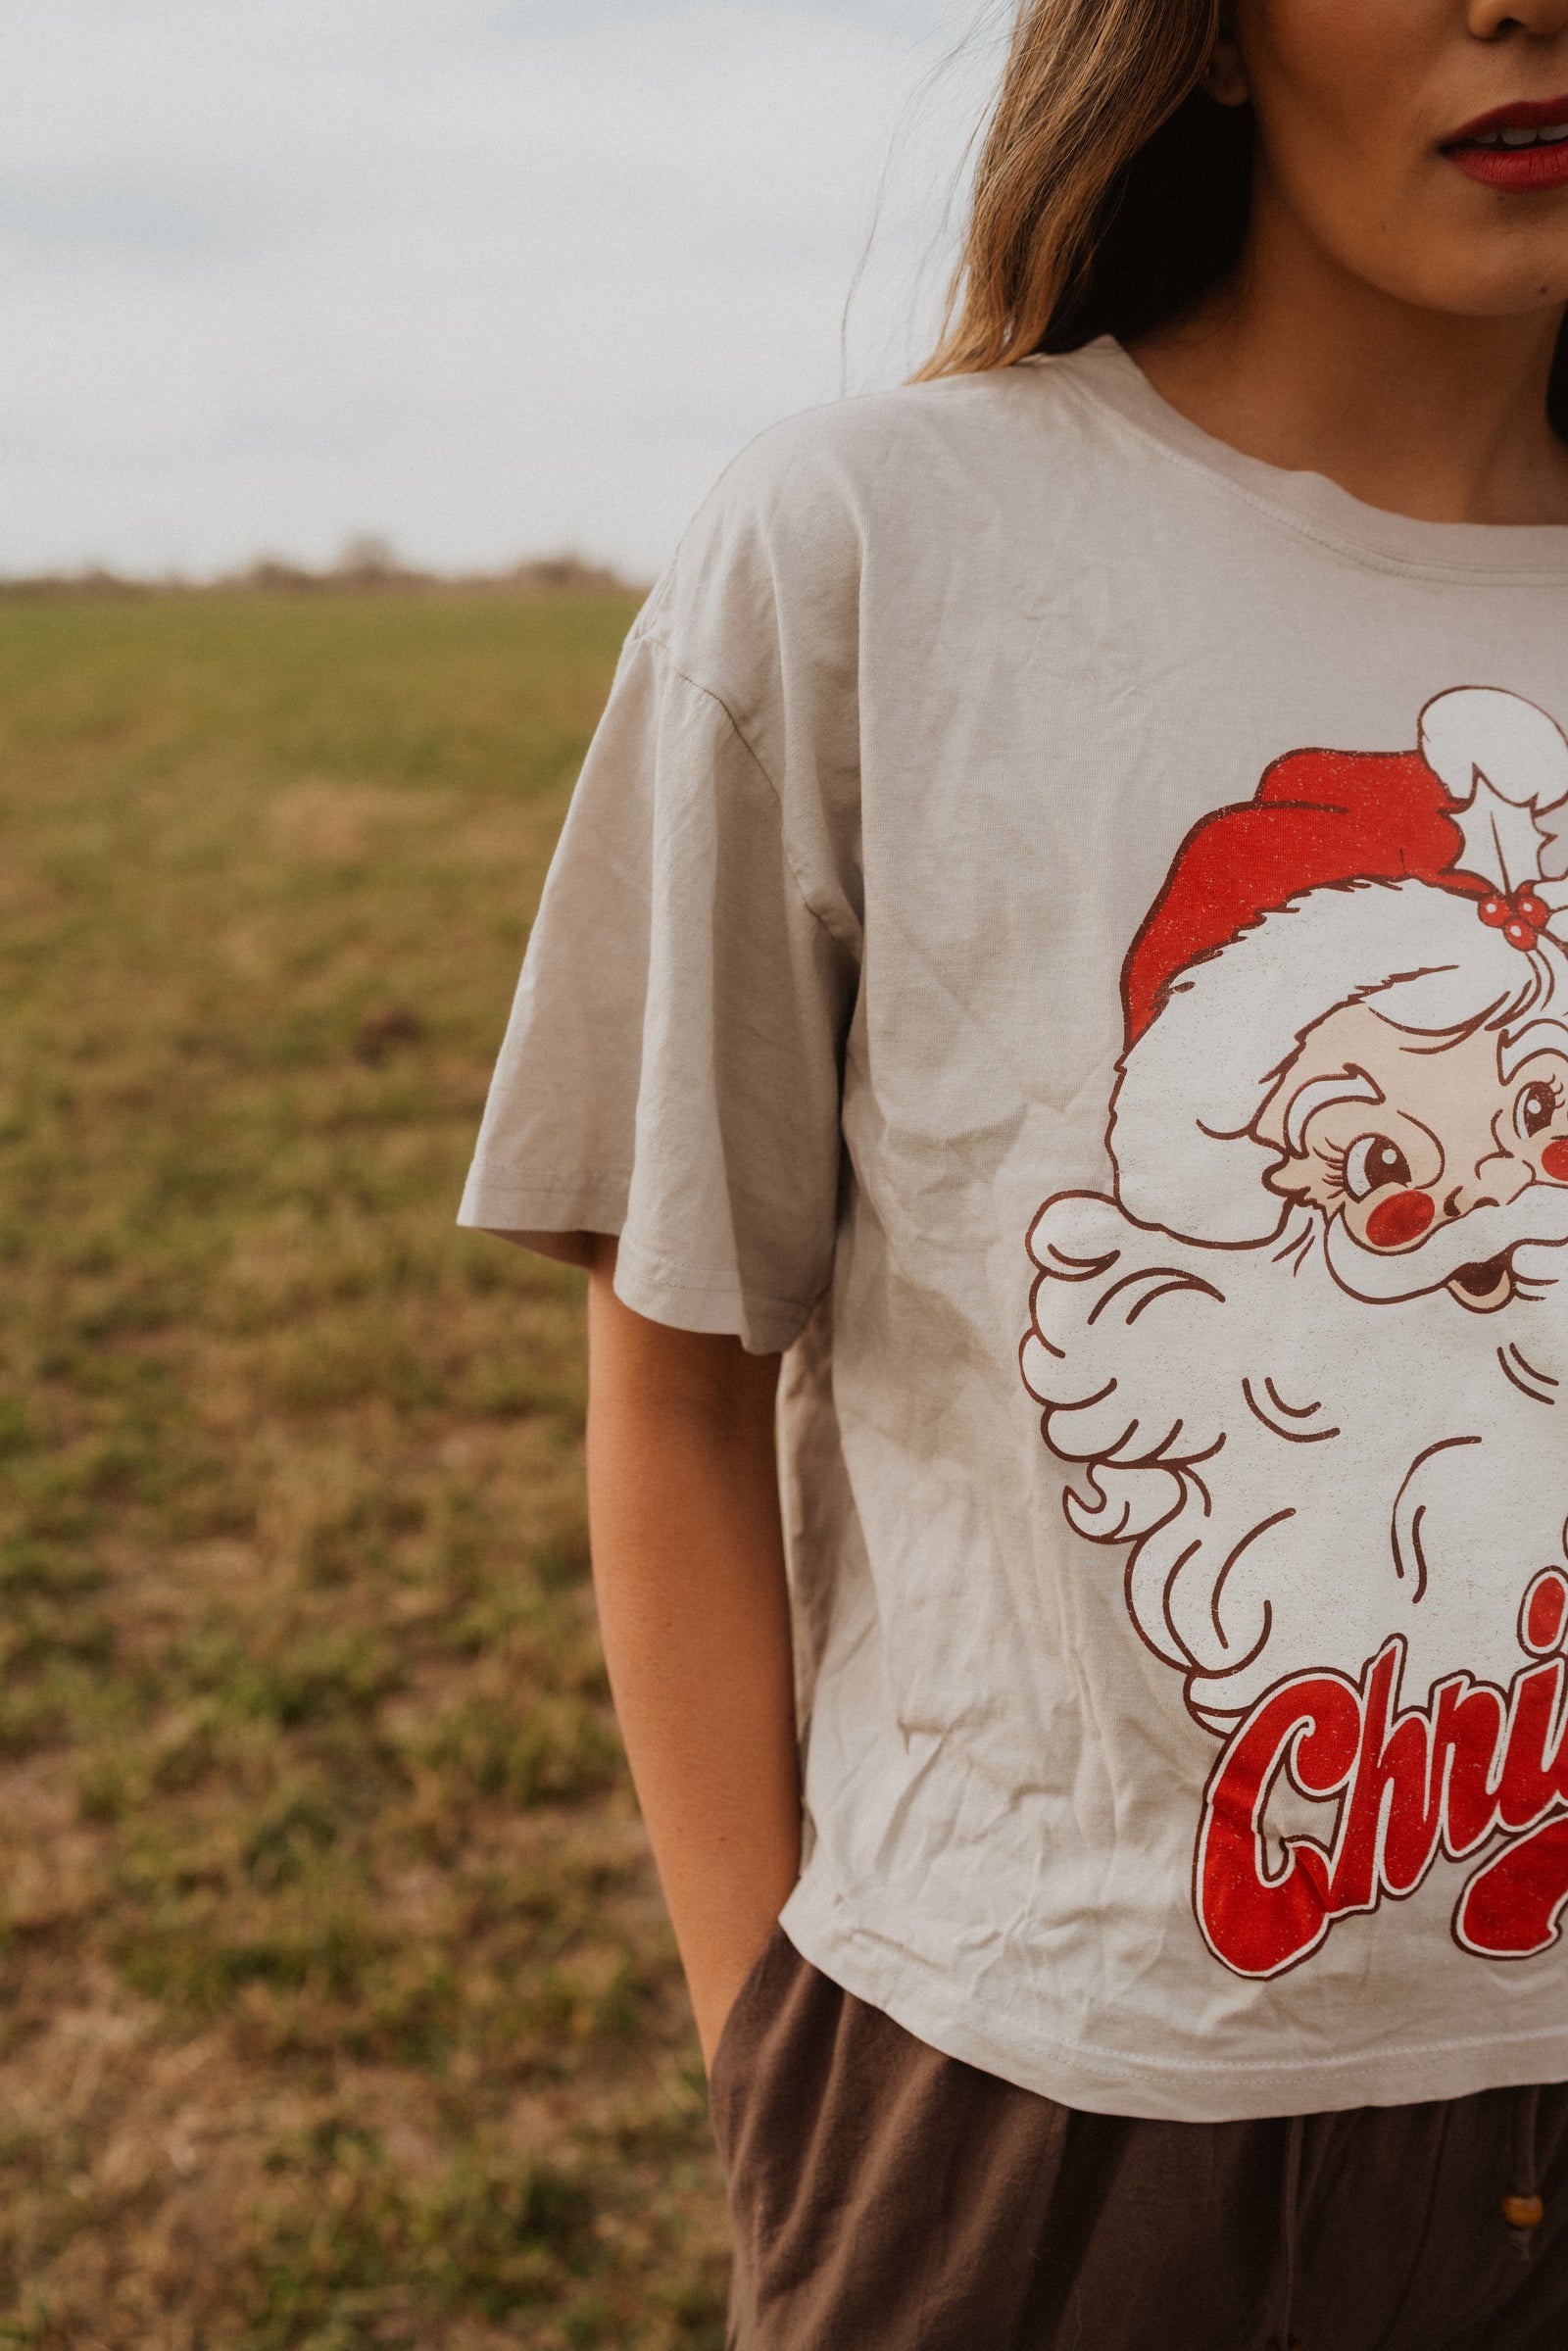 Santa + Rudolph T-Shirt